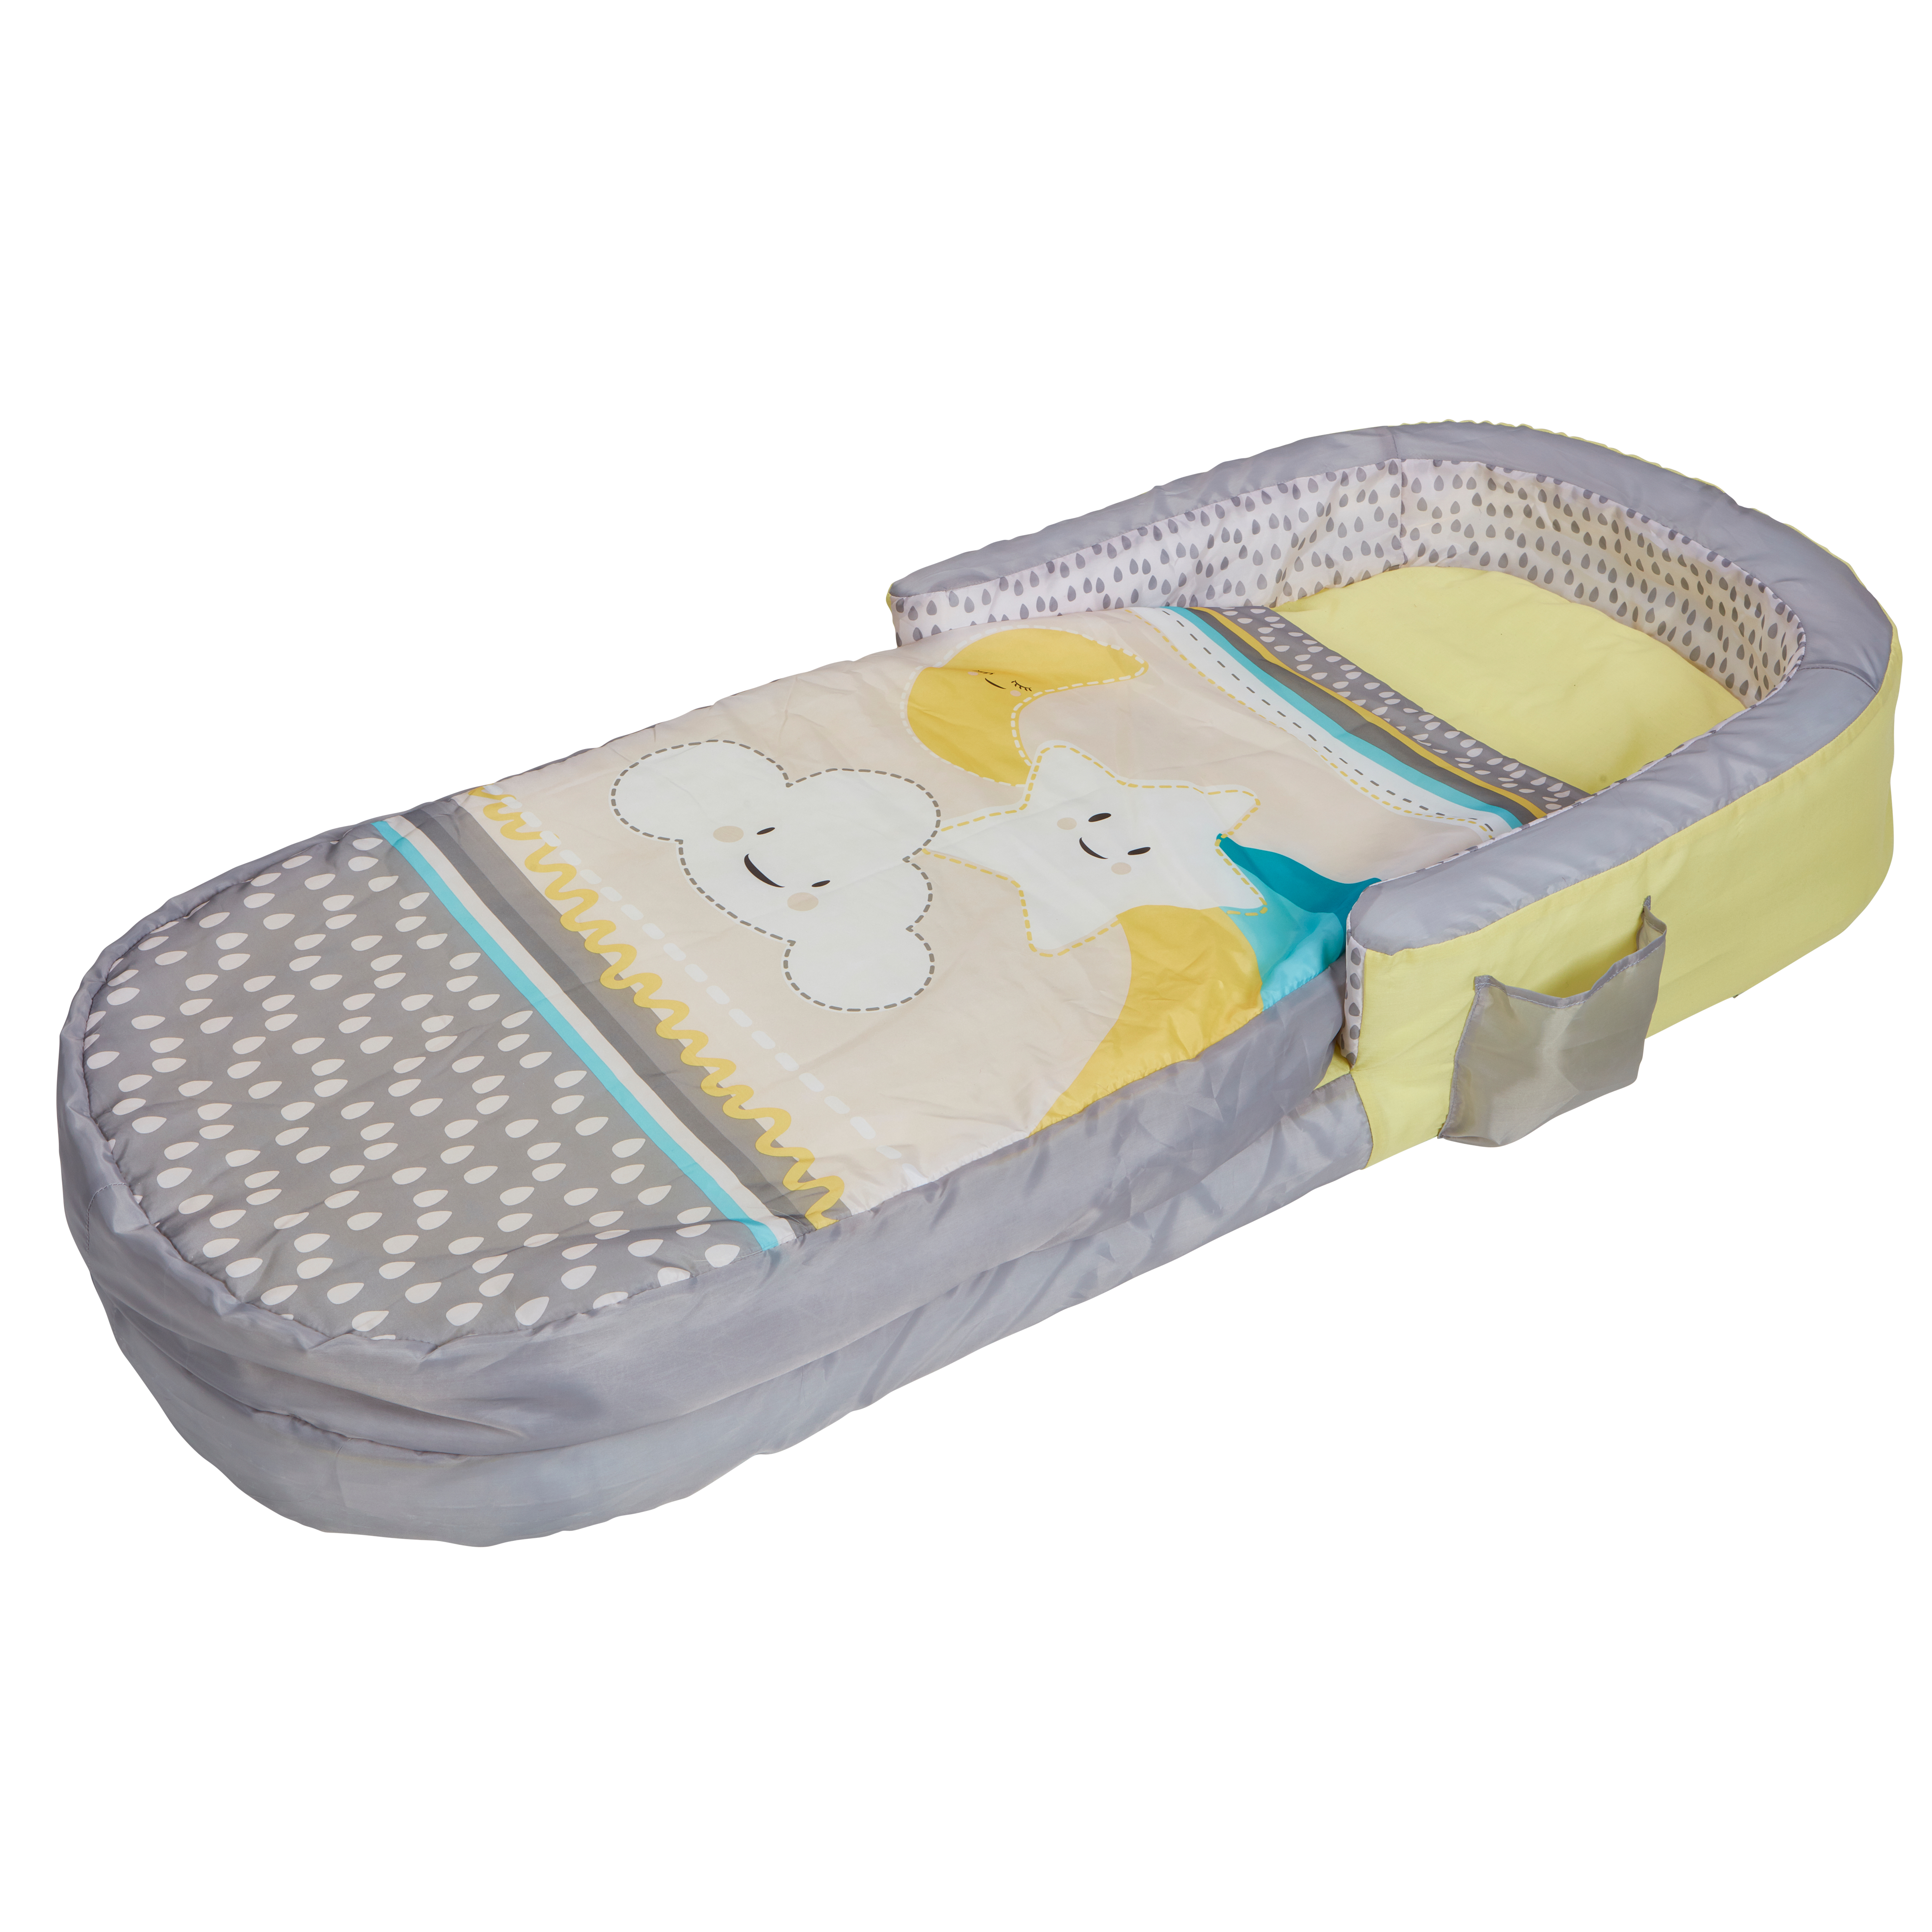 Etoiles et Nuage - Mon tout premier ReadyBed - lit gonflable pour enfants  avec sac de couchage intégré pas cher 